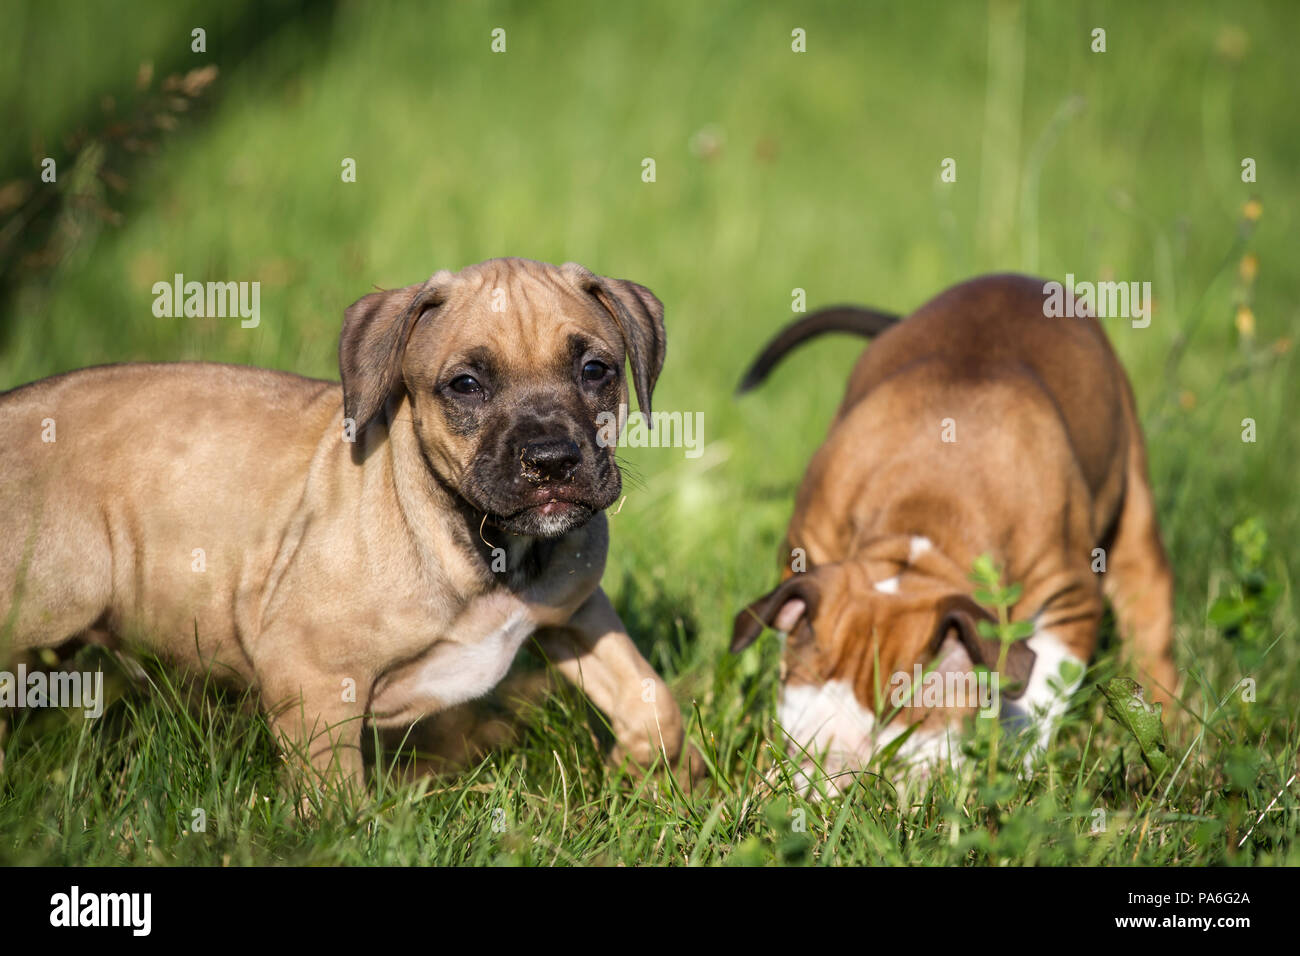 Chiots de type Bulldog jouant sur une prairie Banque D'Images